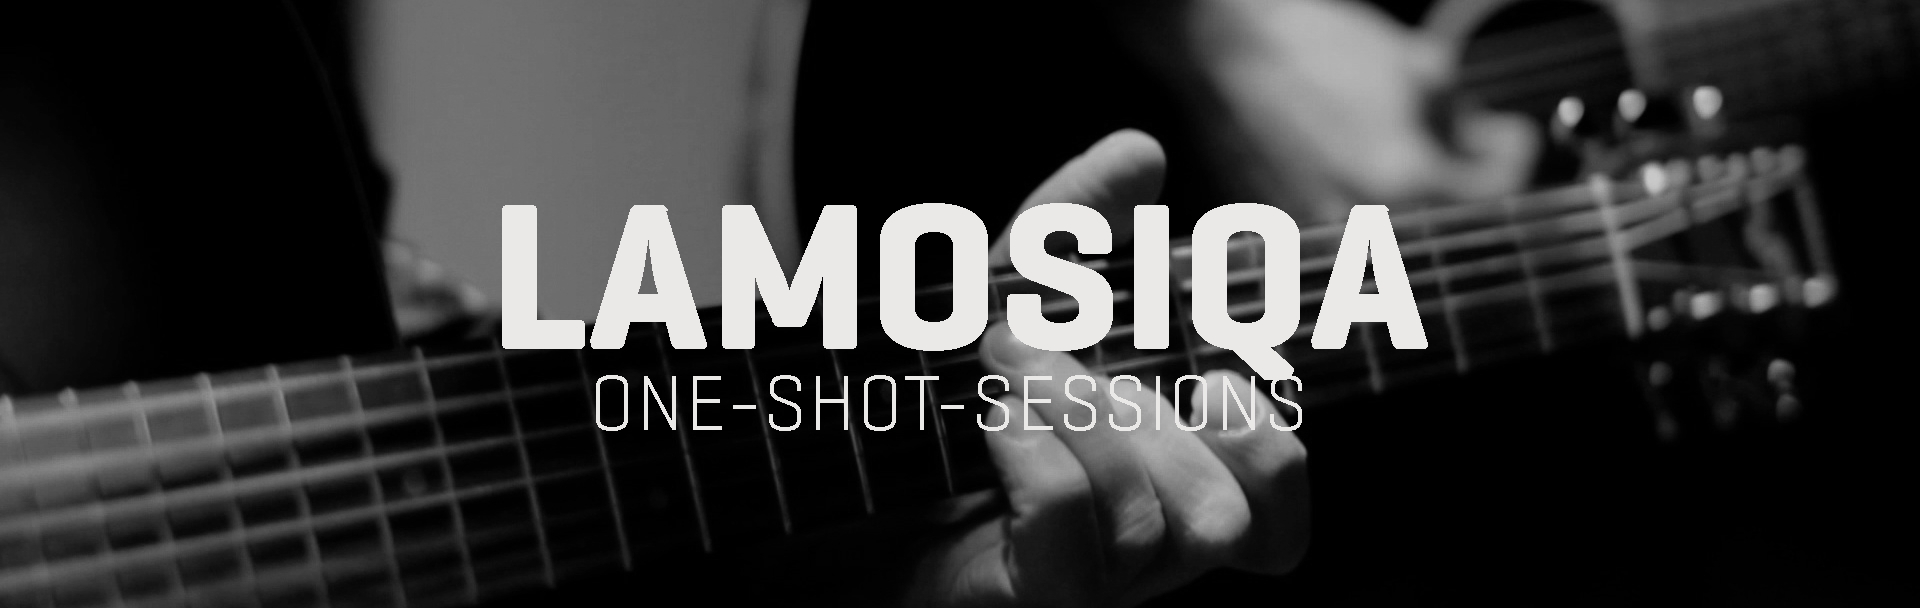 Lamosiqa one-shot-sessions